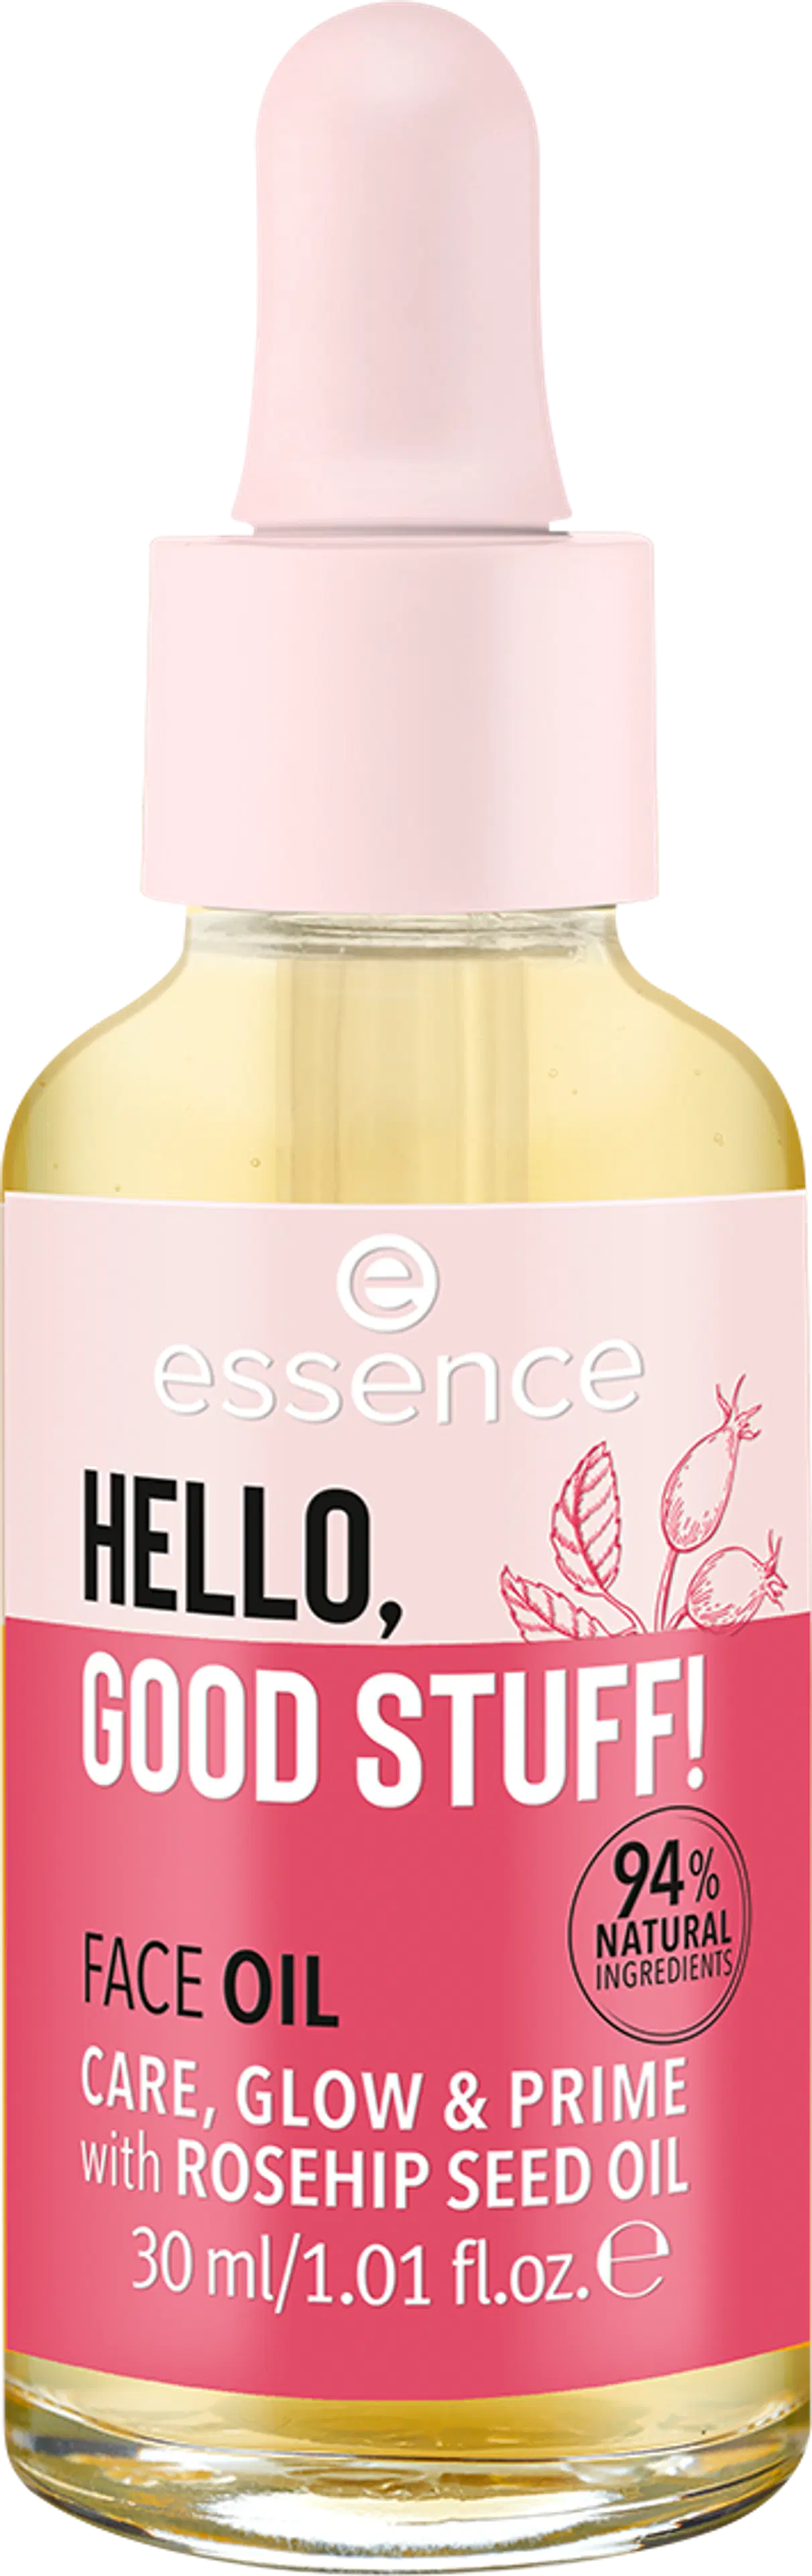 essence HELLO, GOOD STUFF! kasvoöljy 30 ml